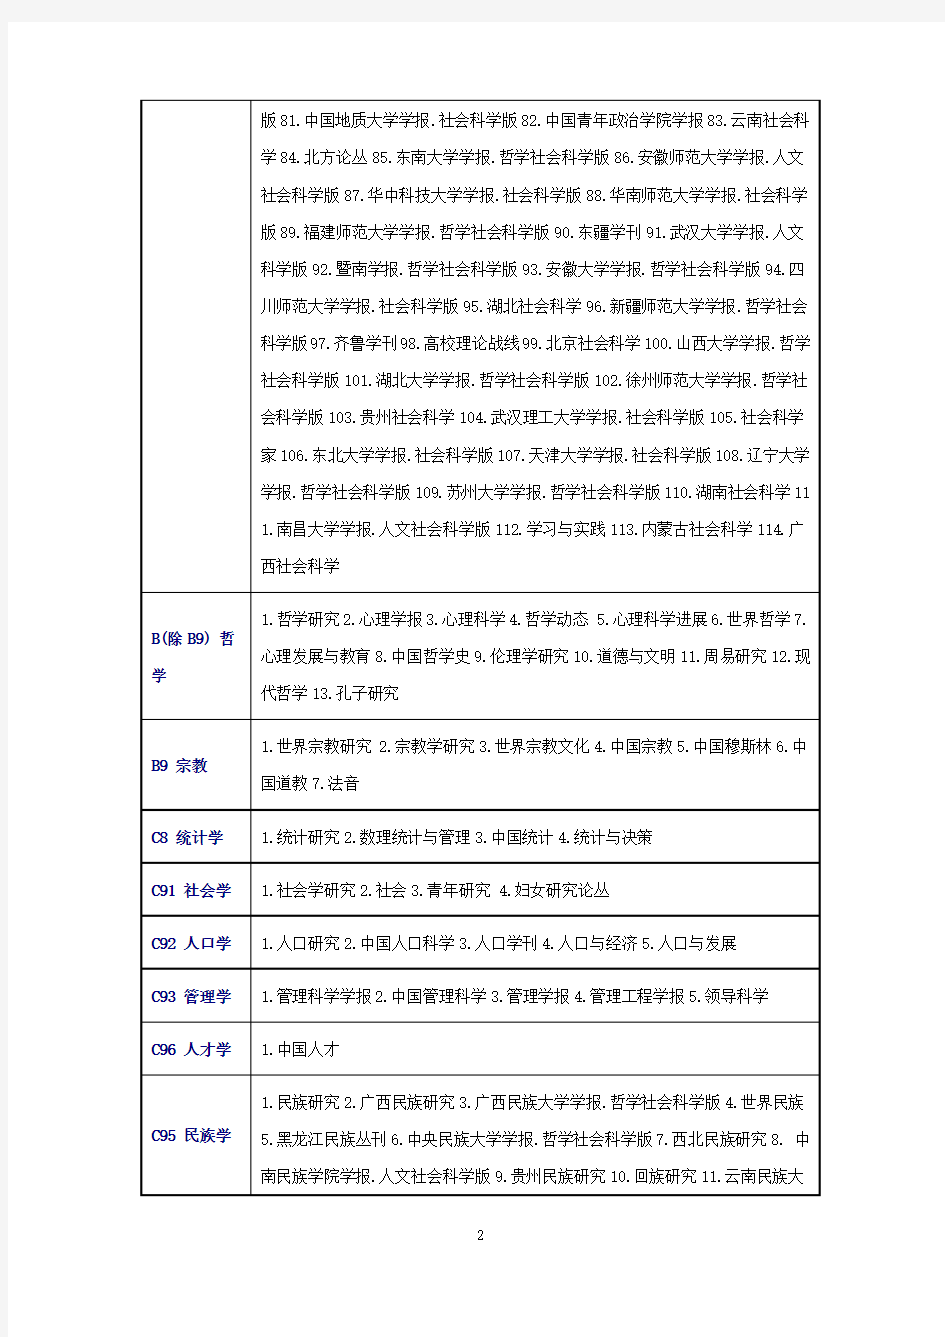 2016北大版《中文核心期刊要目总览》(核心类)